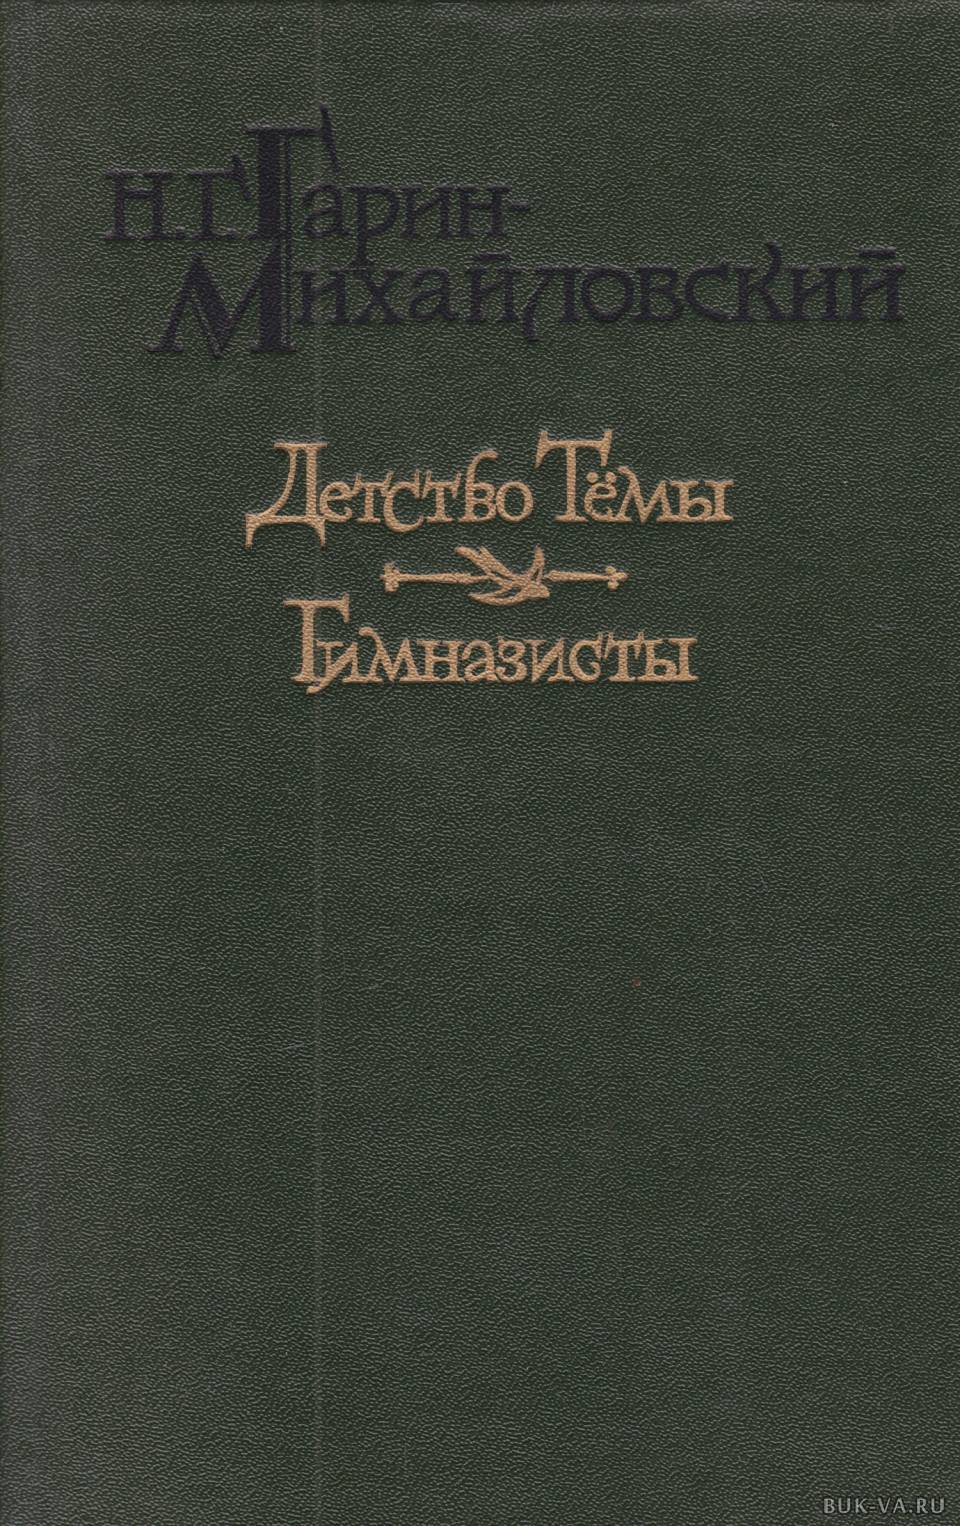 Обложки книг Гарина Михайловского